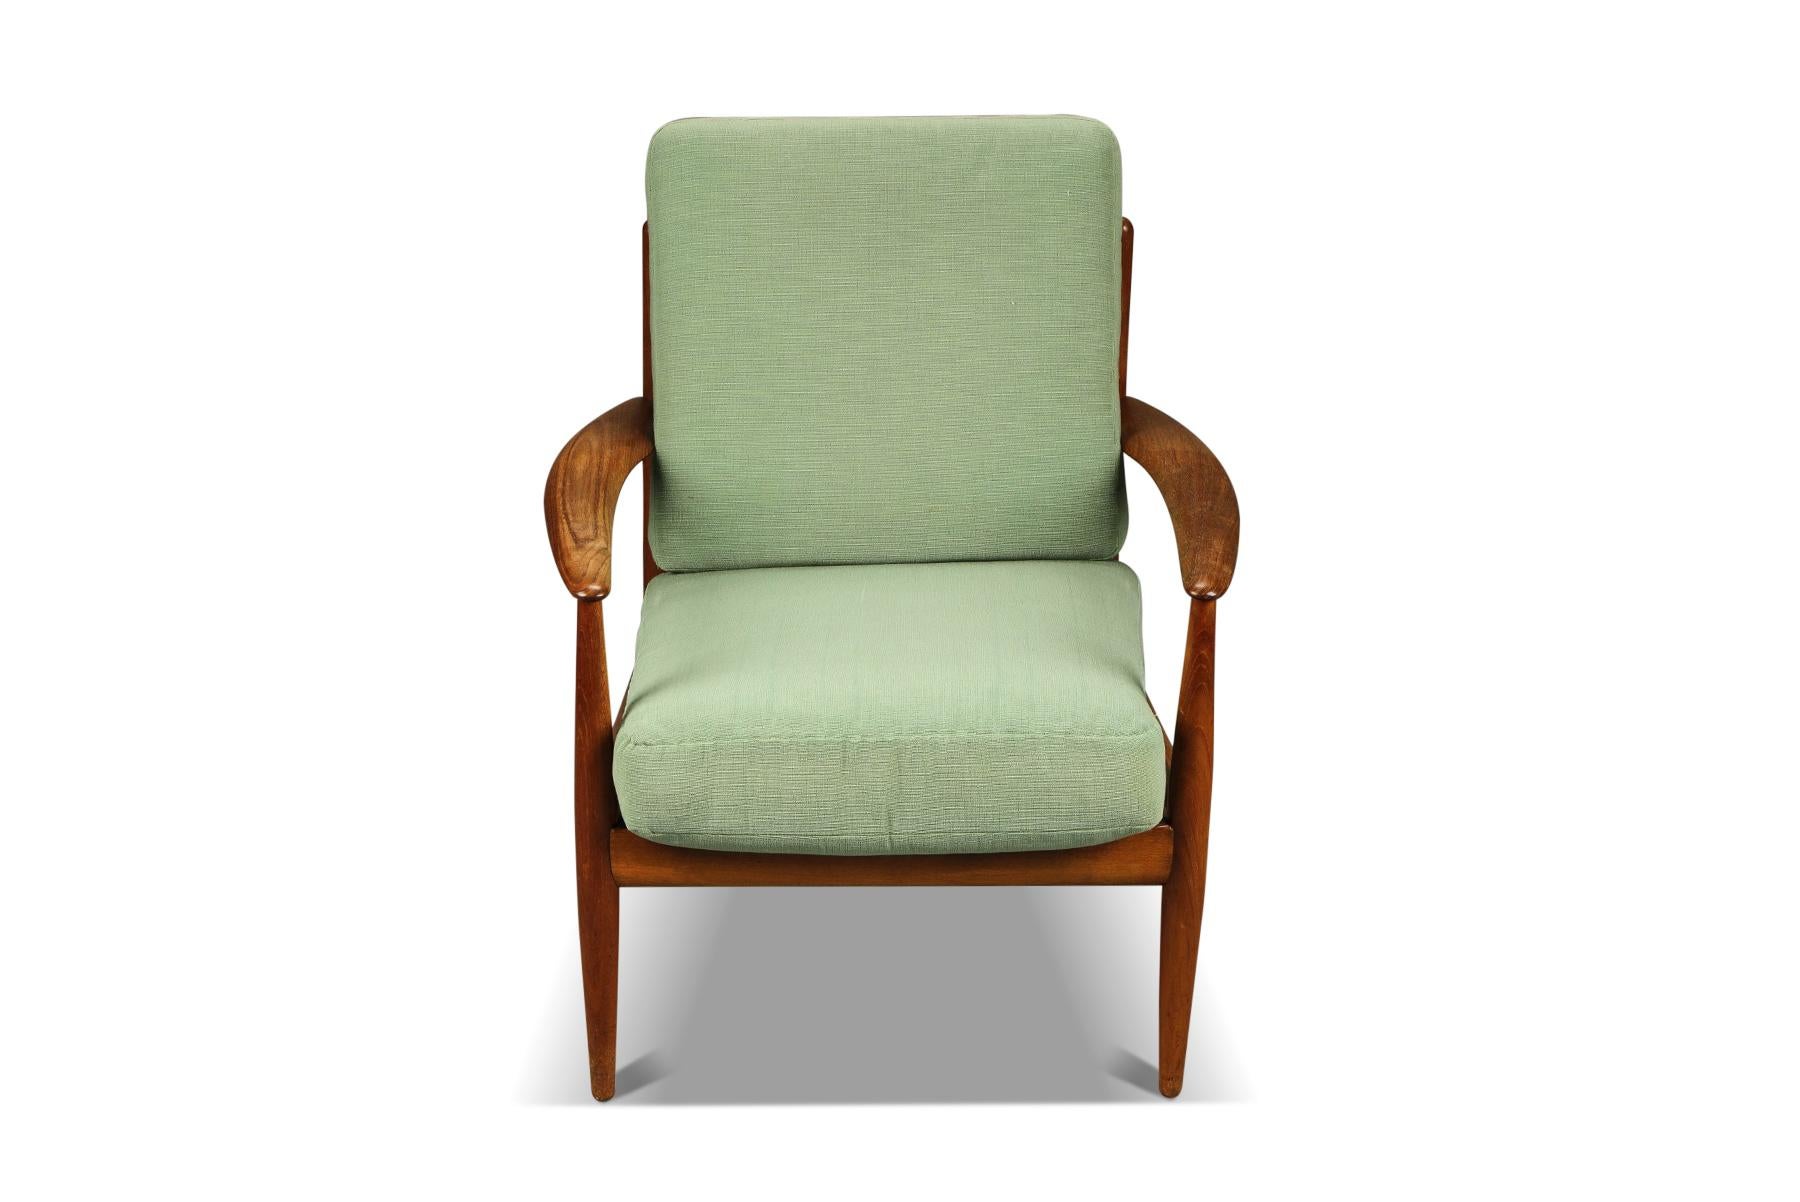 Mid-Century Modern Grete Jalk Lounge Chair in Teak